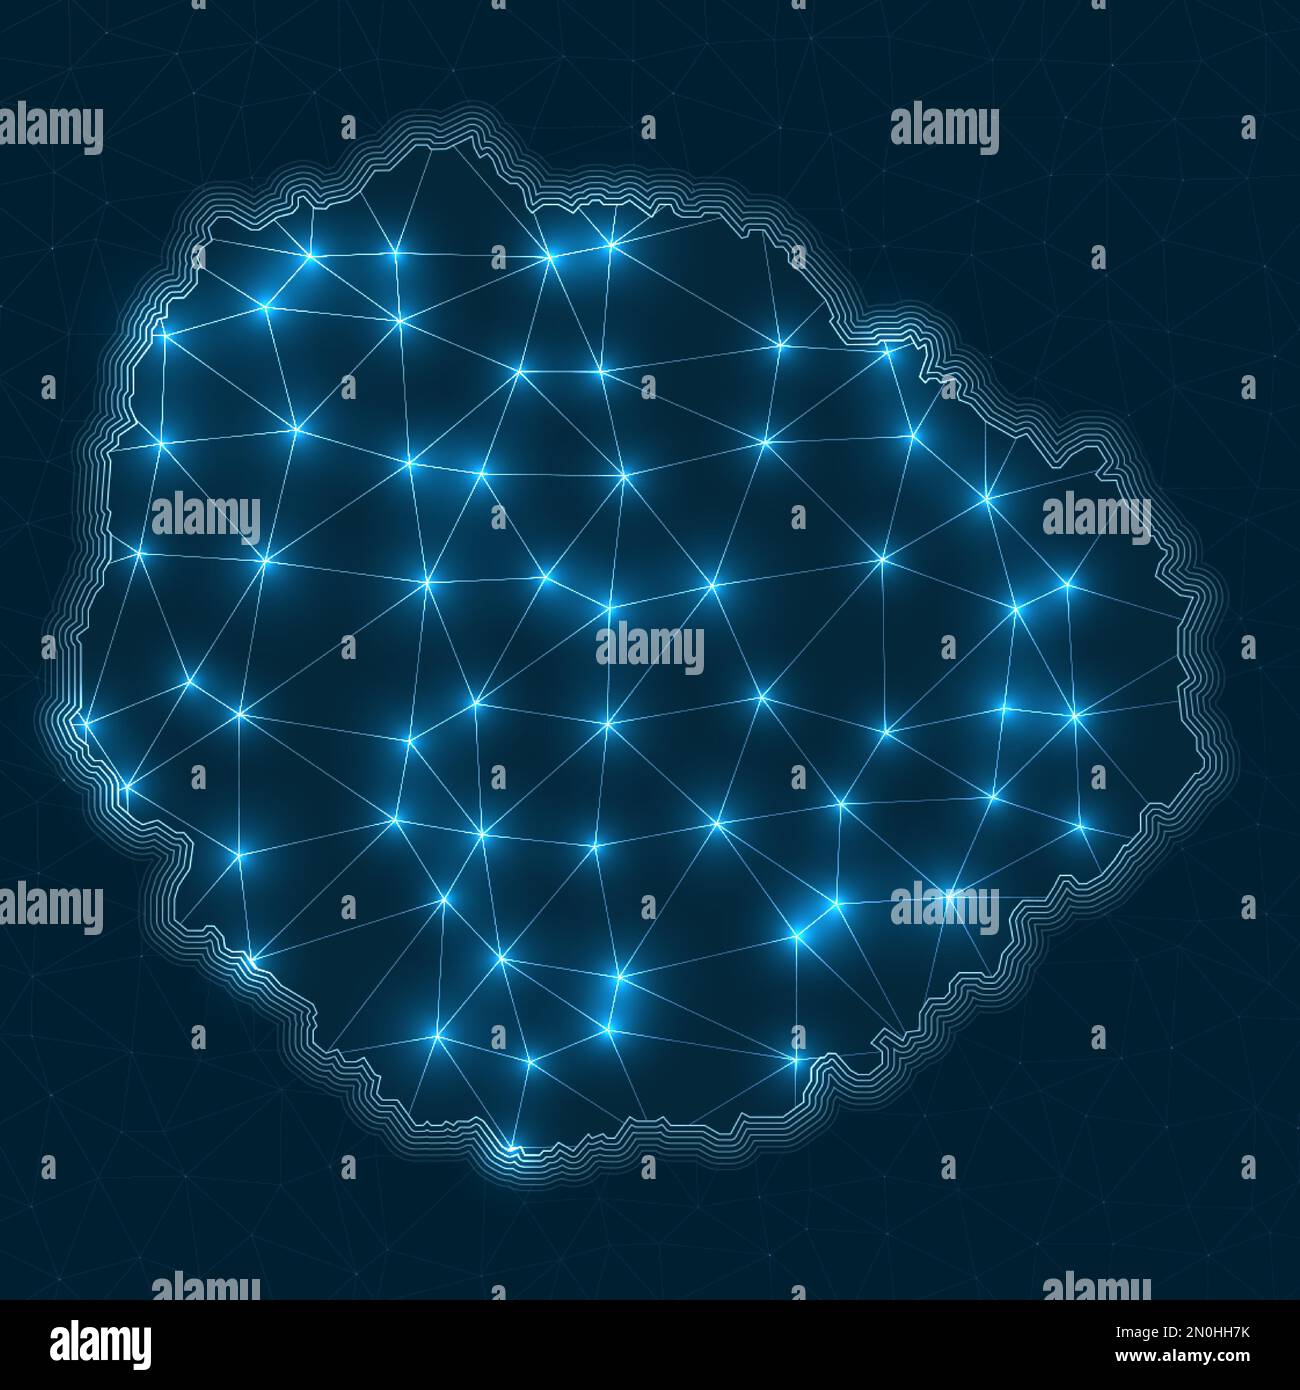 Netzwerkkarte La Gomera. Abstrakte geometrische Karte der Insel. Digitale Anschlüsse und Telekommunikationsdesign. Leuchtendes Internetnetzwerk. Elegantes vecto Stock Vektor